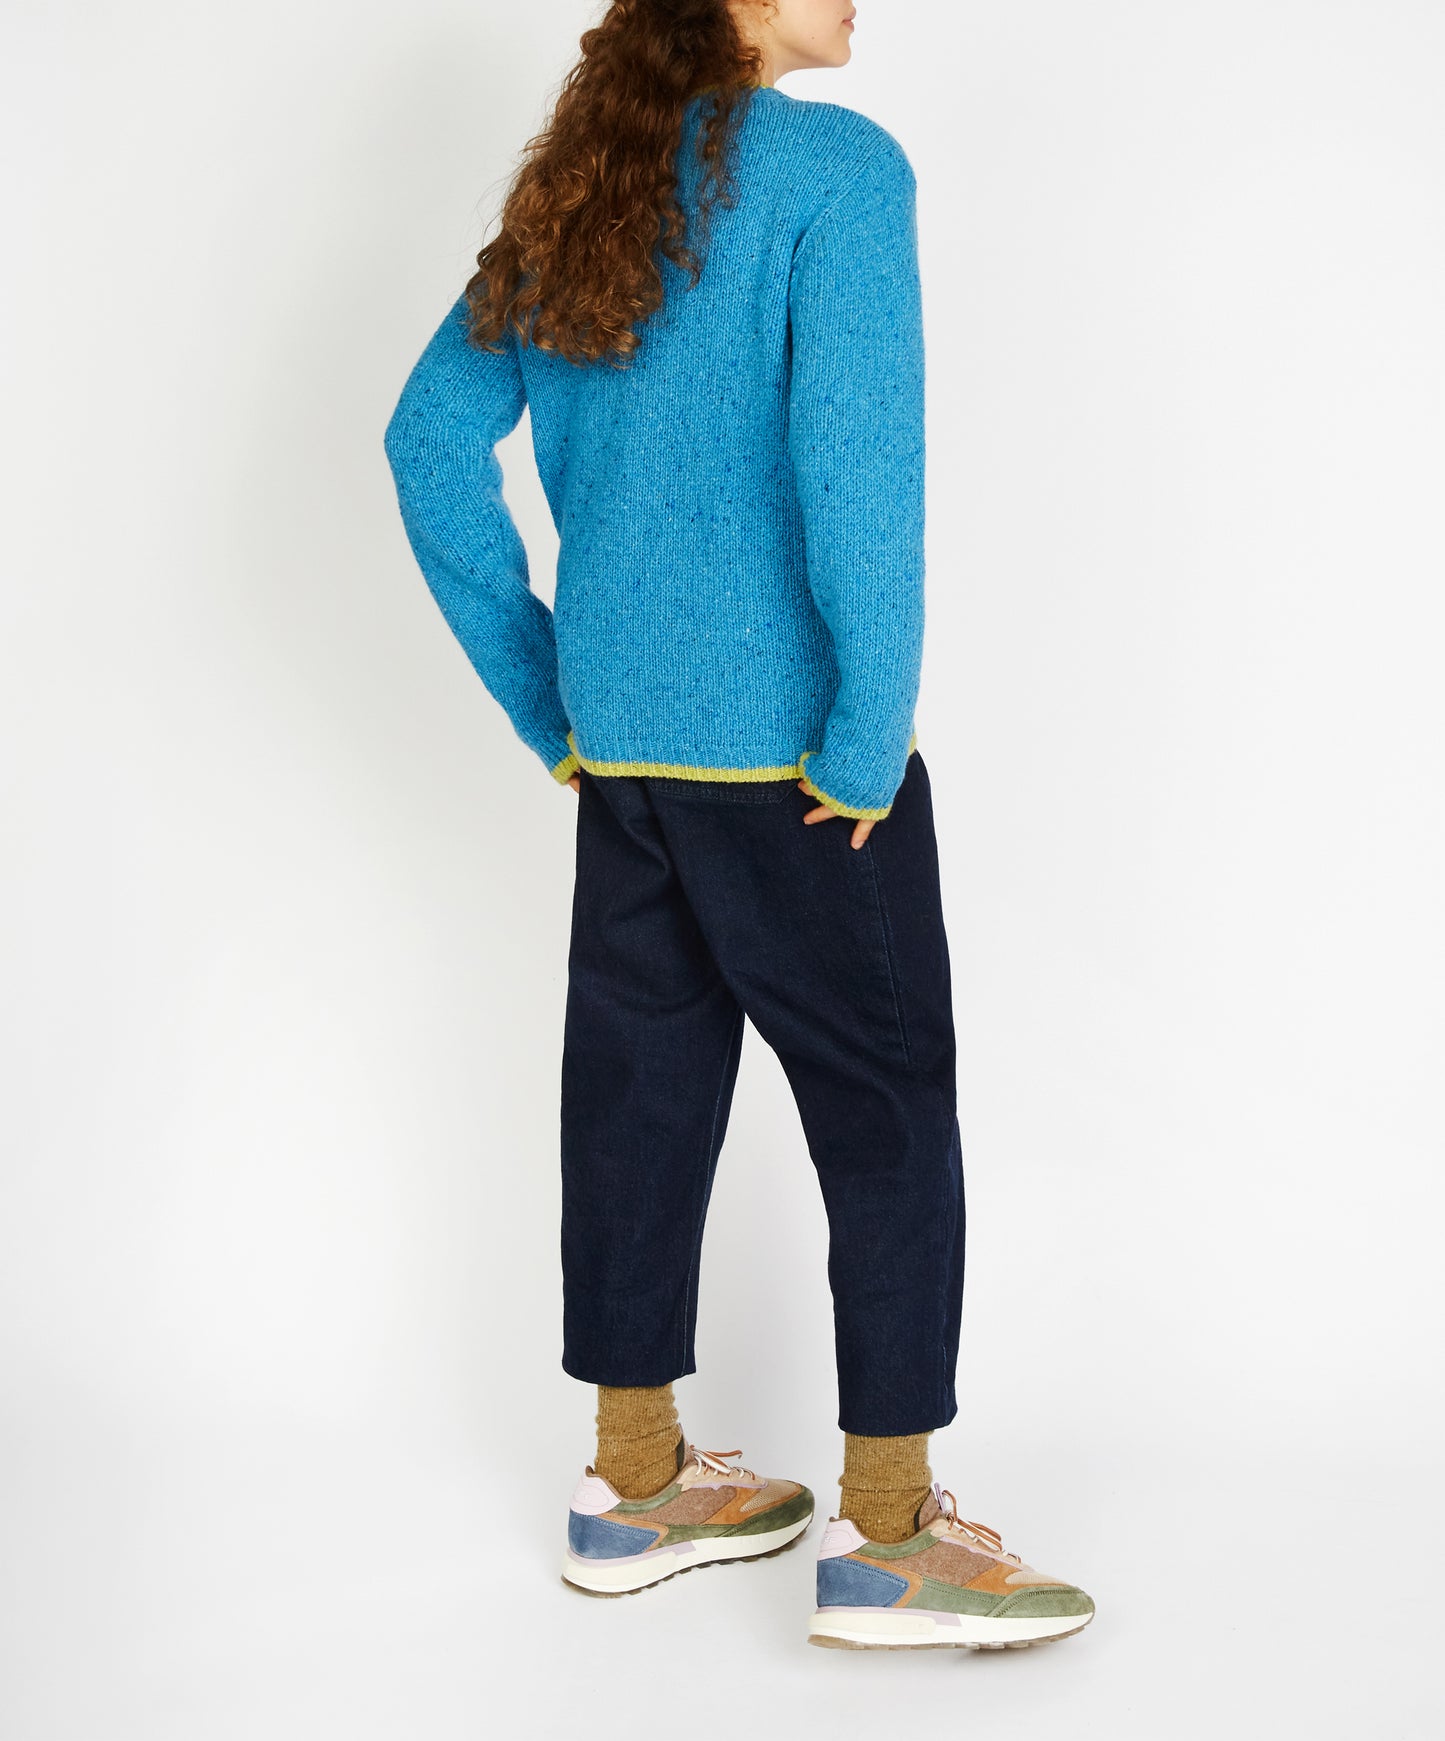  IrelandsEye Knitwear Slaney Crew Neck Sweater Forget-Me-Not Blue